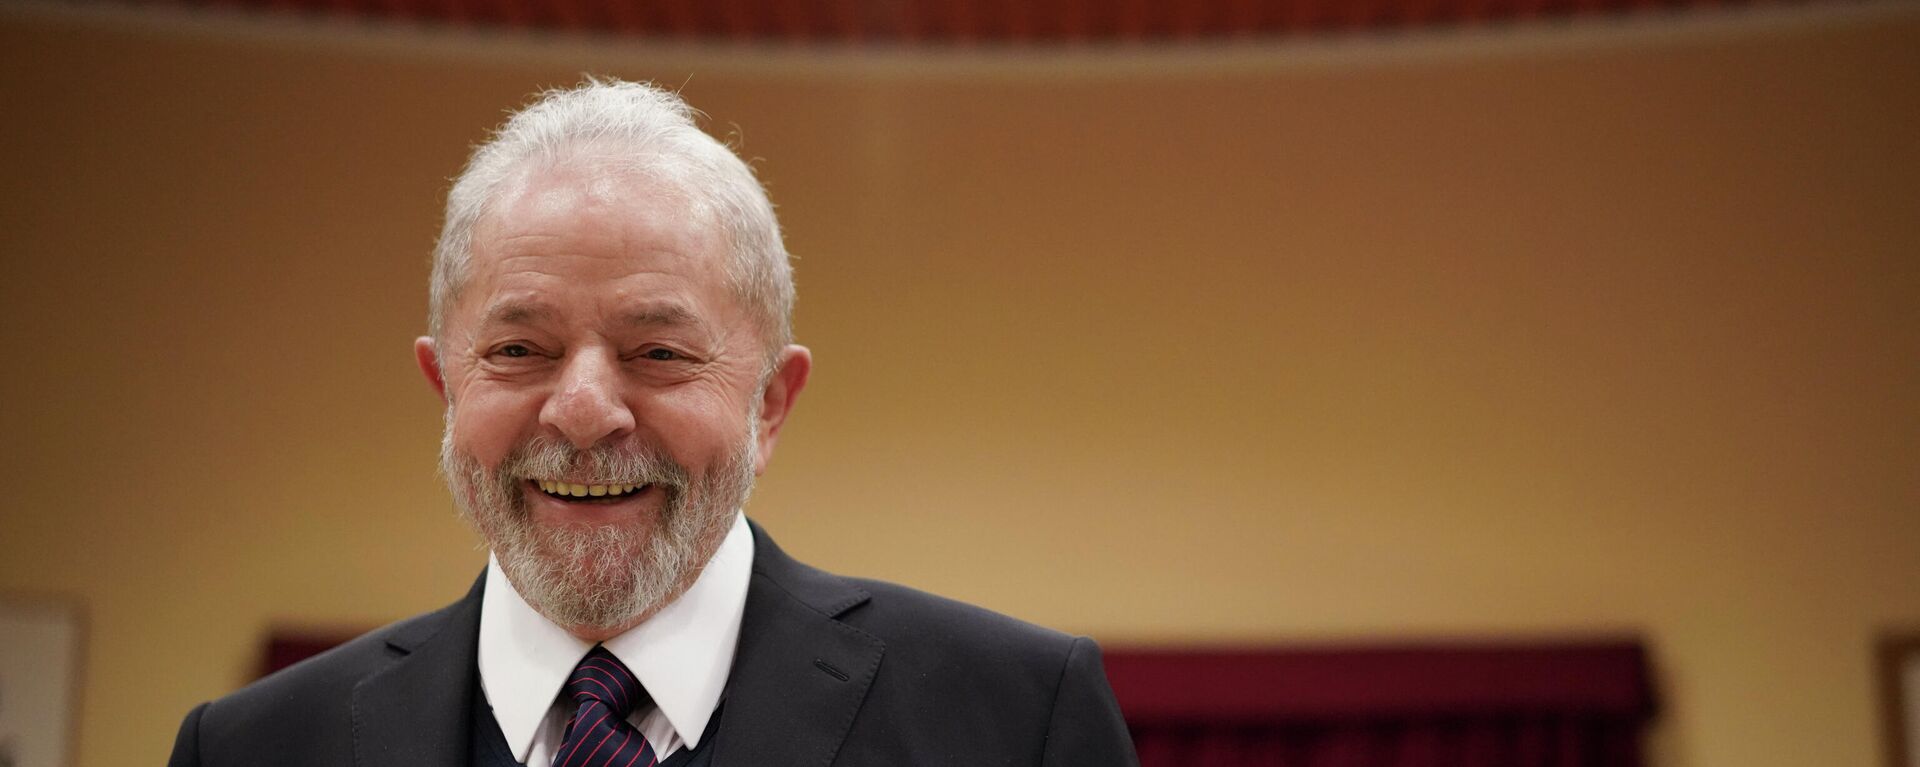 O ex-presidente brasileiro Luiz Inácio Lula da Silva sorri ao chegar para uma reunião com o sindicato italiano Cgil, em Roma, quinta-feira, 13 de fevereiro de 2020 - Sputnik Brasil, 1920, 17.11.2021